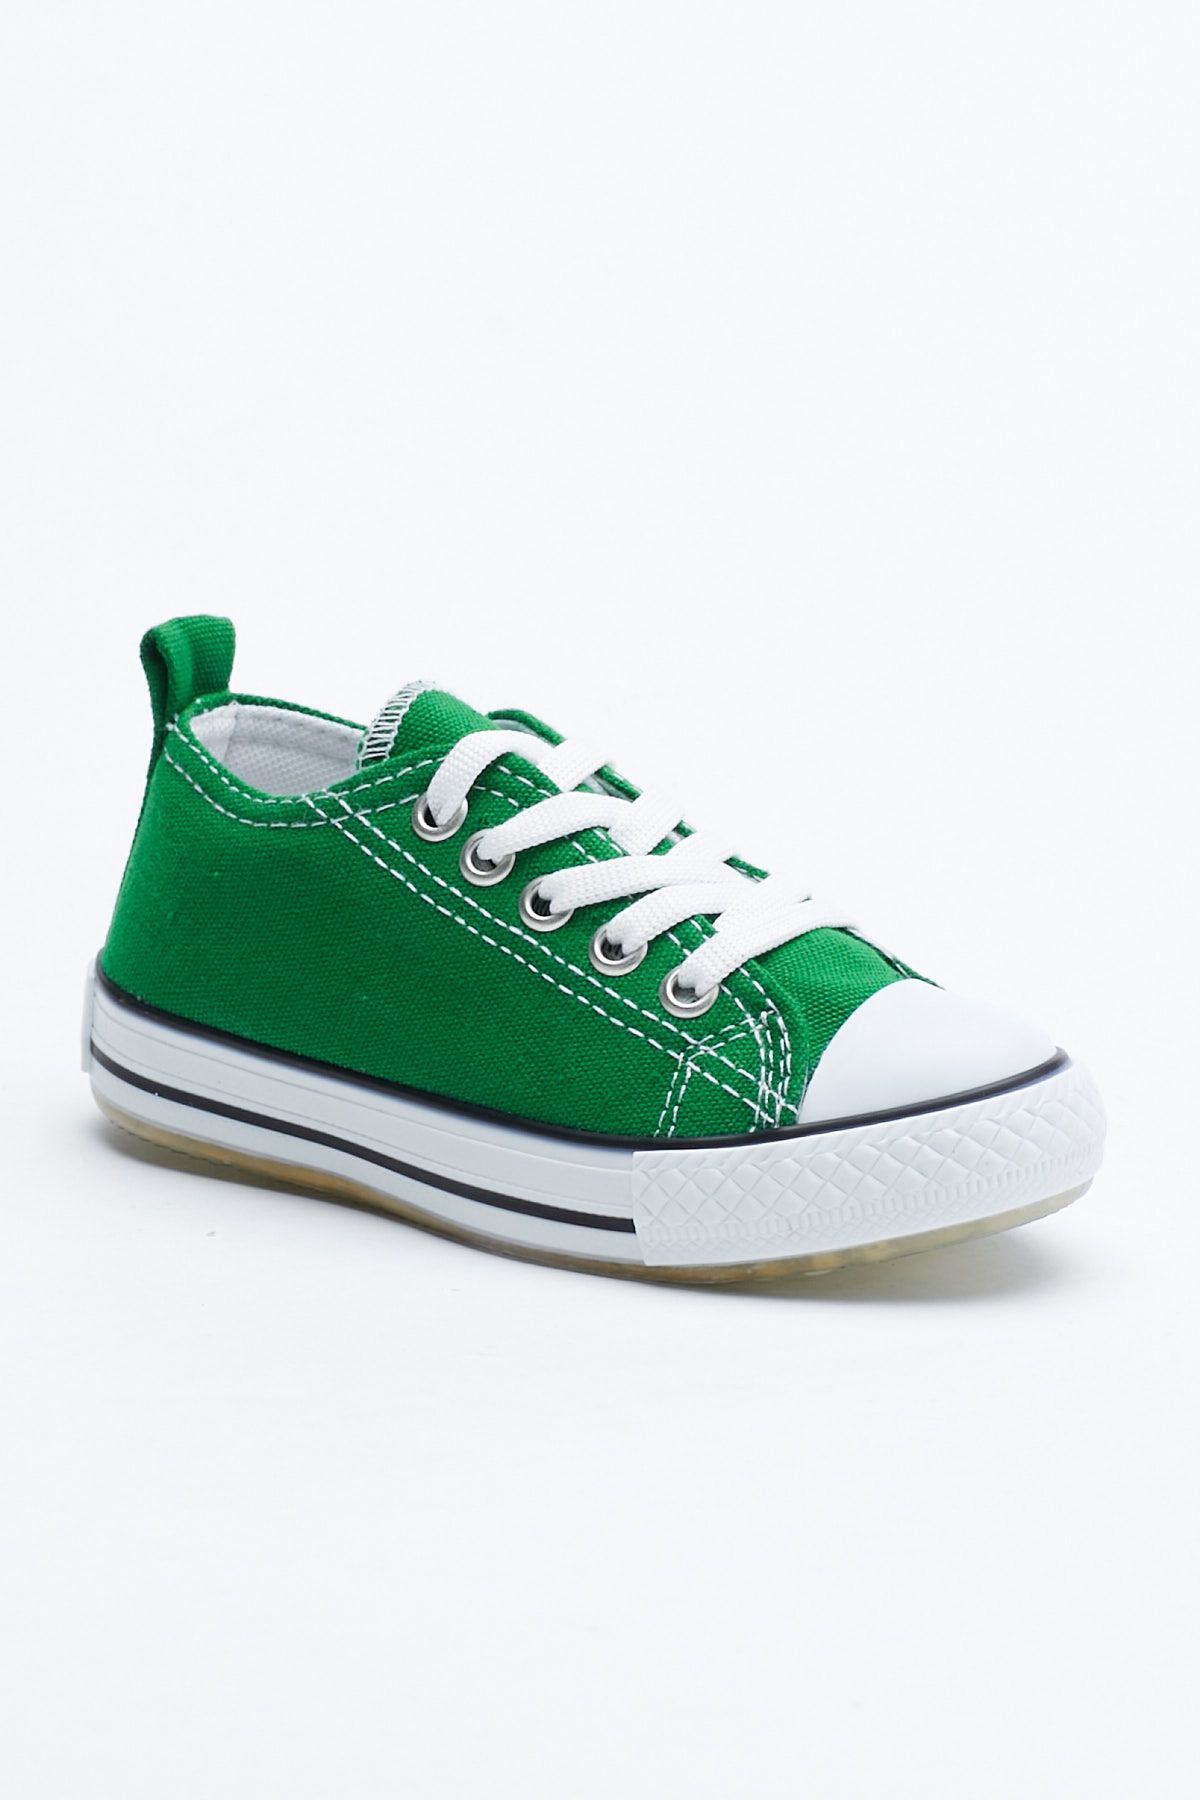 Tonny Black Çocuk Unisex Yeşil Işıklı Bağcıklı Spor Ayakkabı Tb998